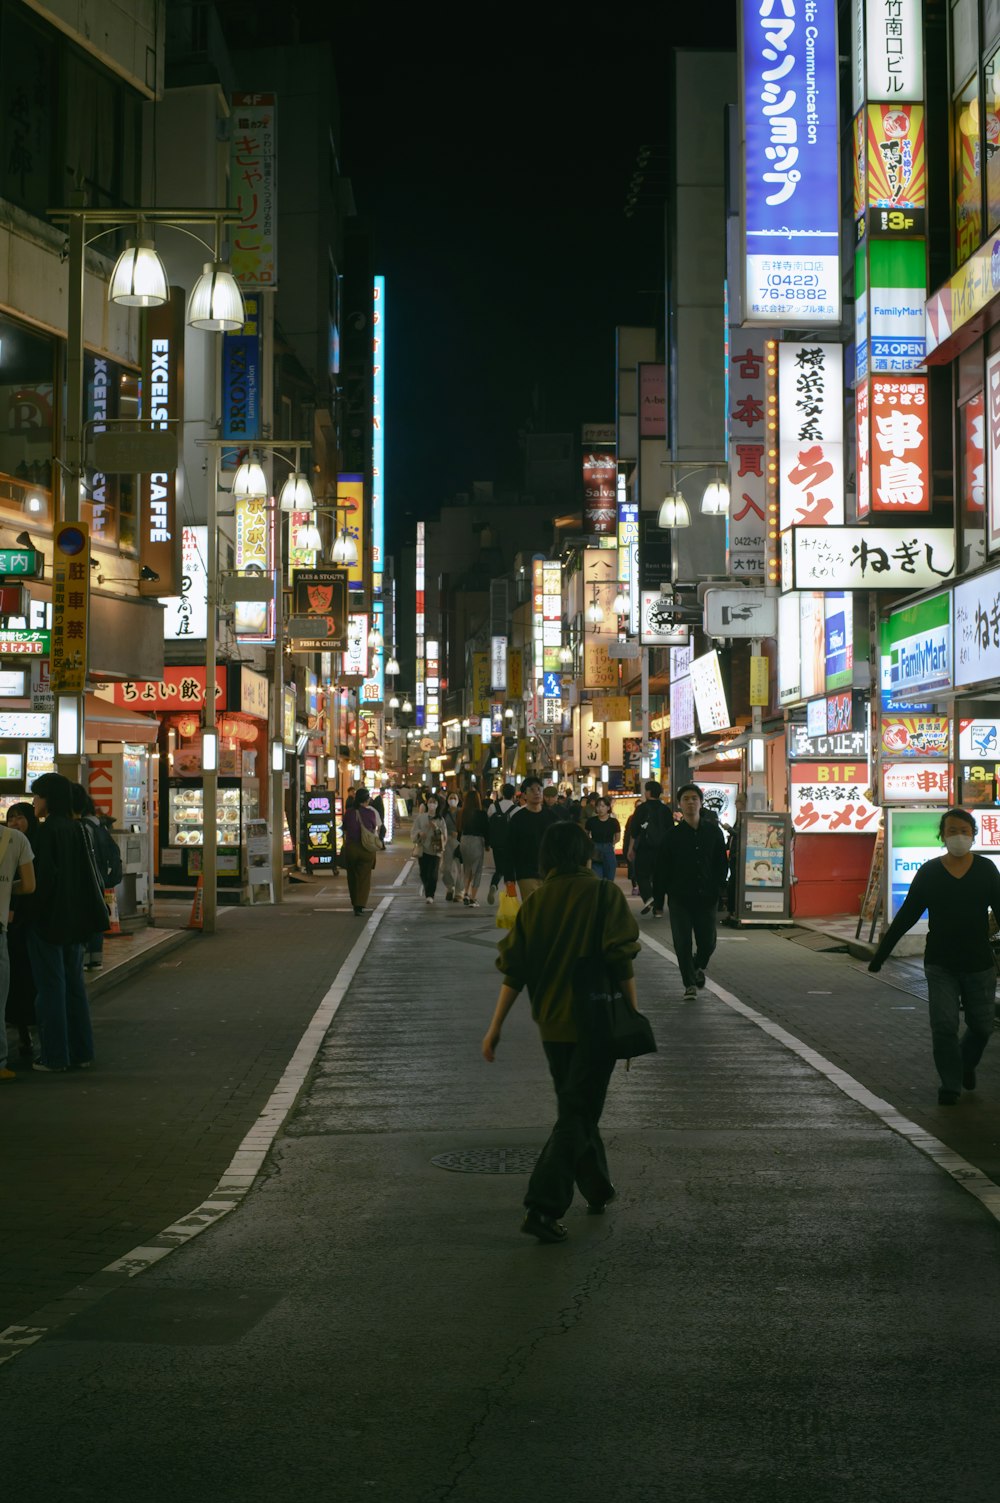 Eine überfüllte Stadtstraße bei Nacht mit Menschen, die spazieren gehen